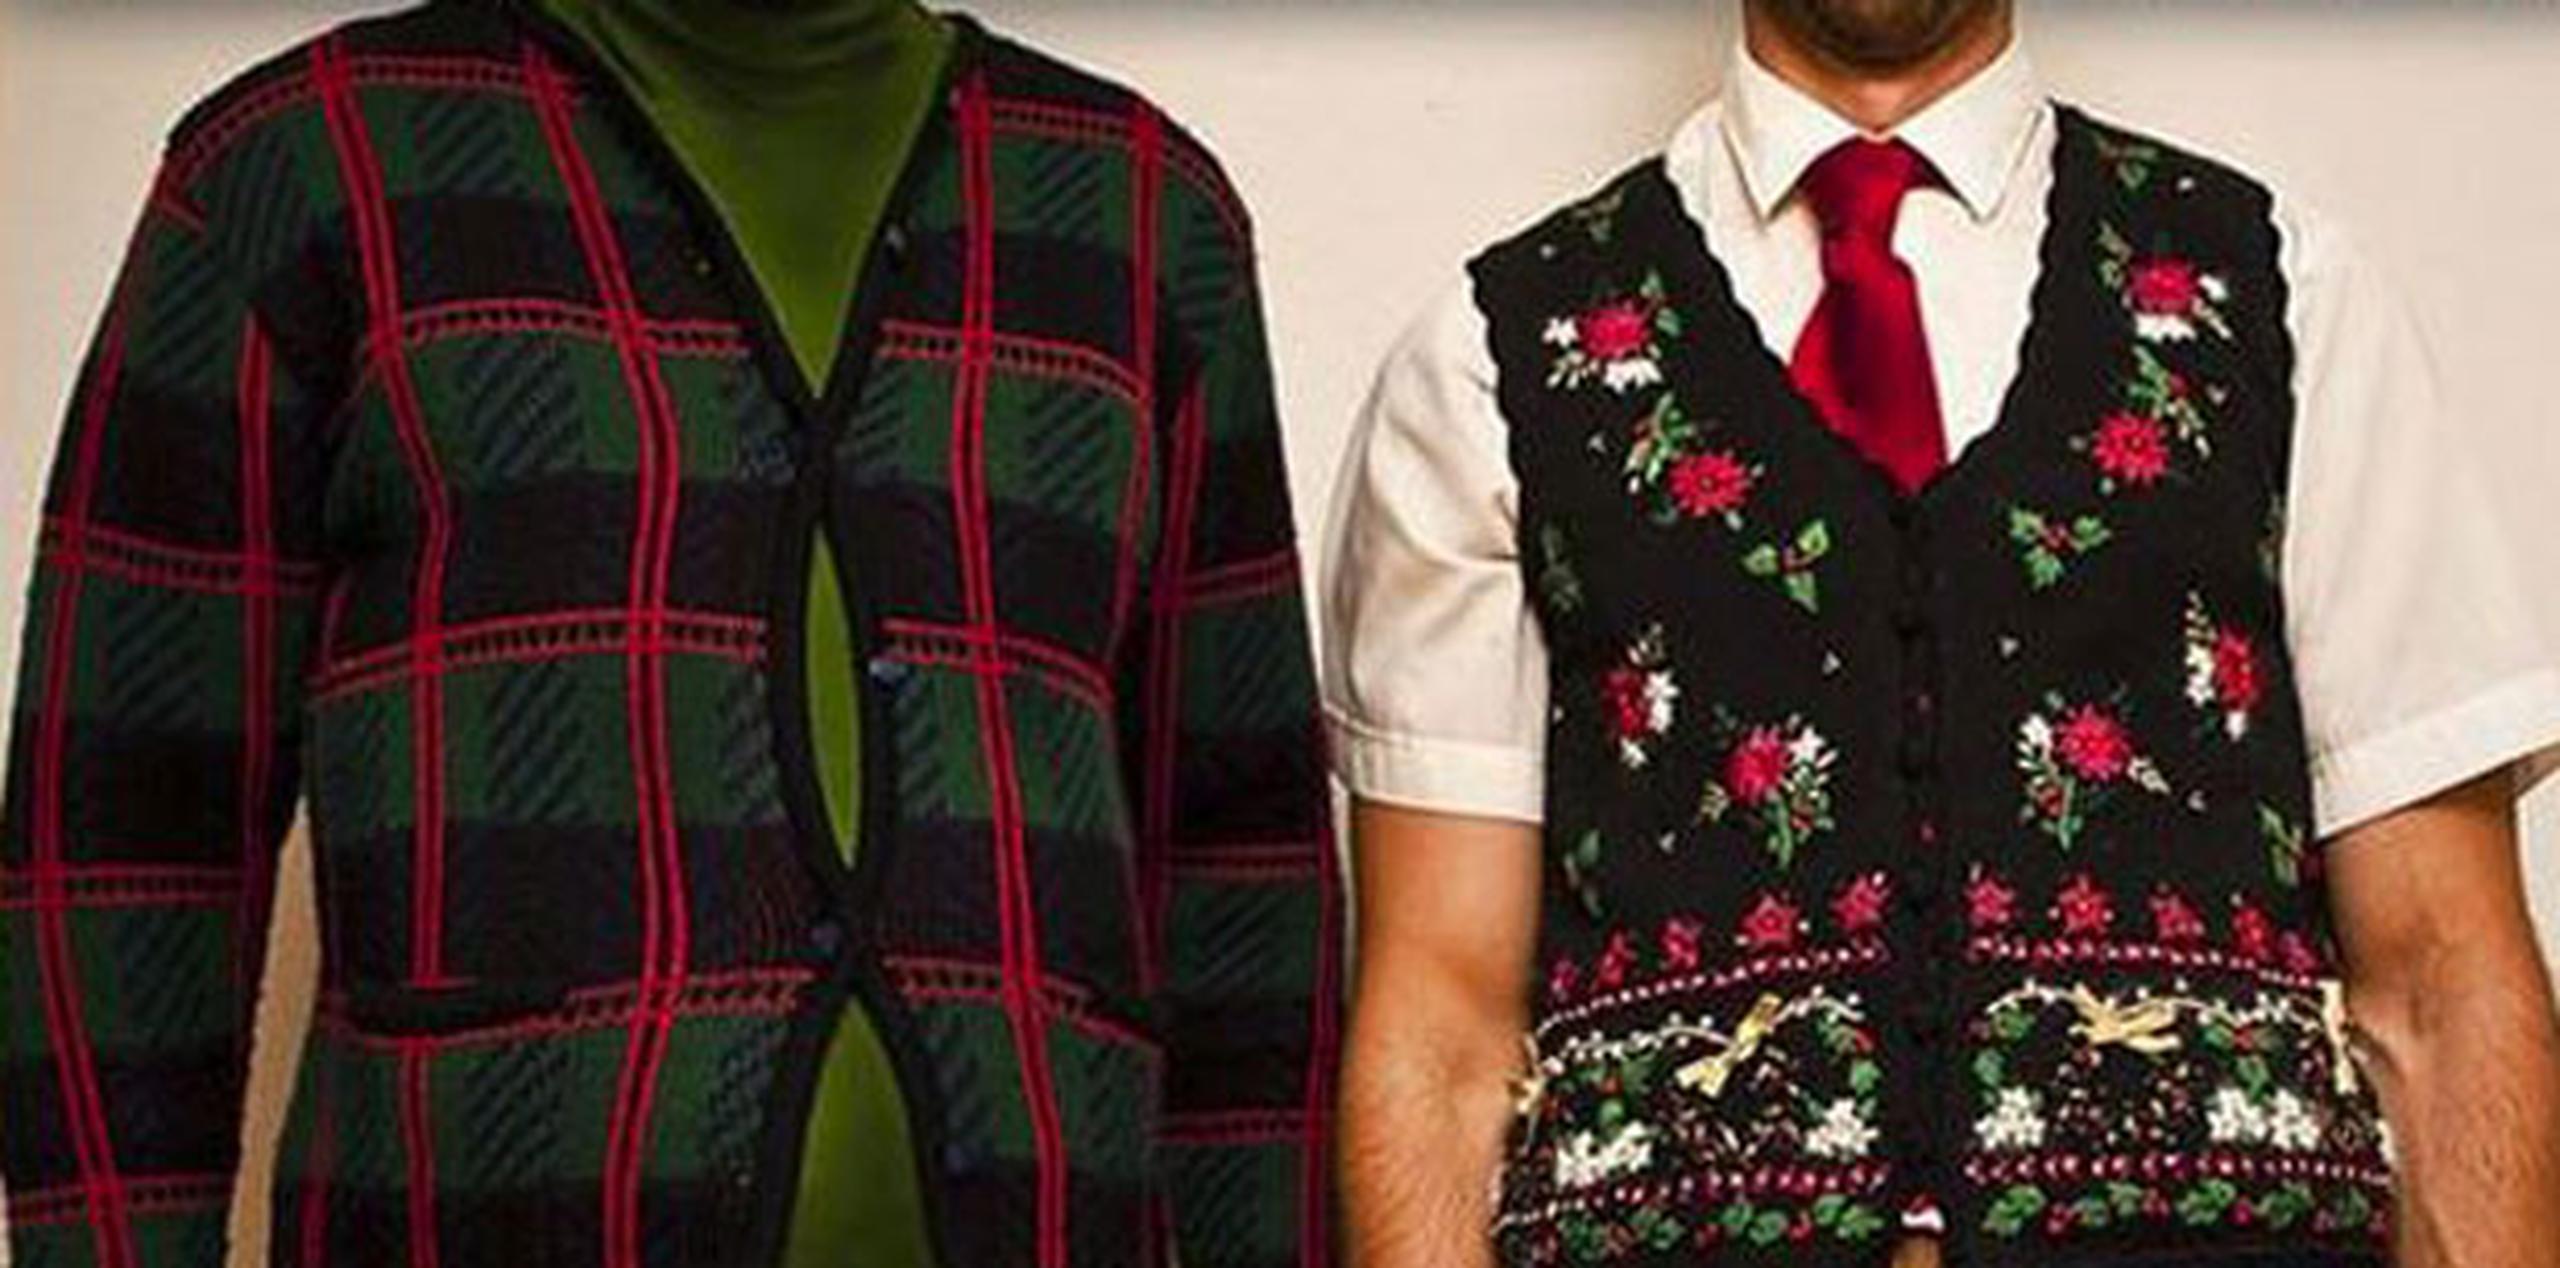 Las redes sociales se han plagado de usuarios que querían compartir el momento mediante la etiqueta #UglySweaterDay, donde algunos hasta exhibían sus más rocambolescas creaciones, como un suéter del que cuelgan bolas de árbol de Navidad.  (Twitter)